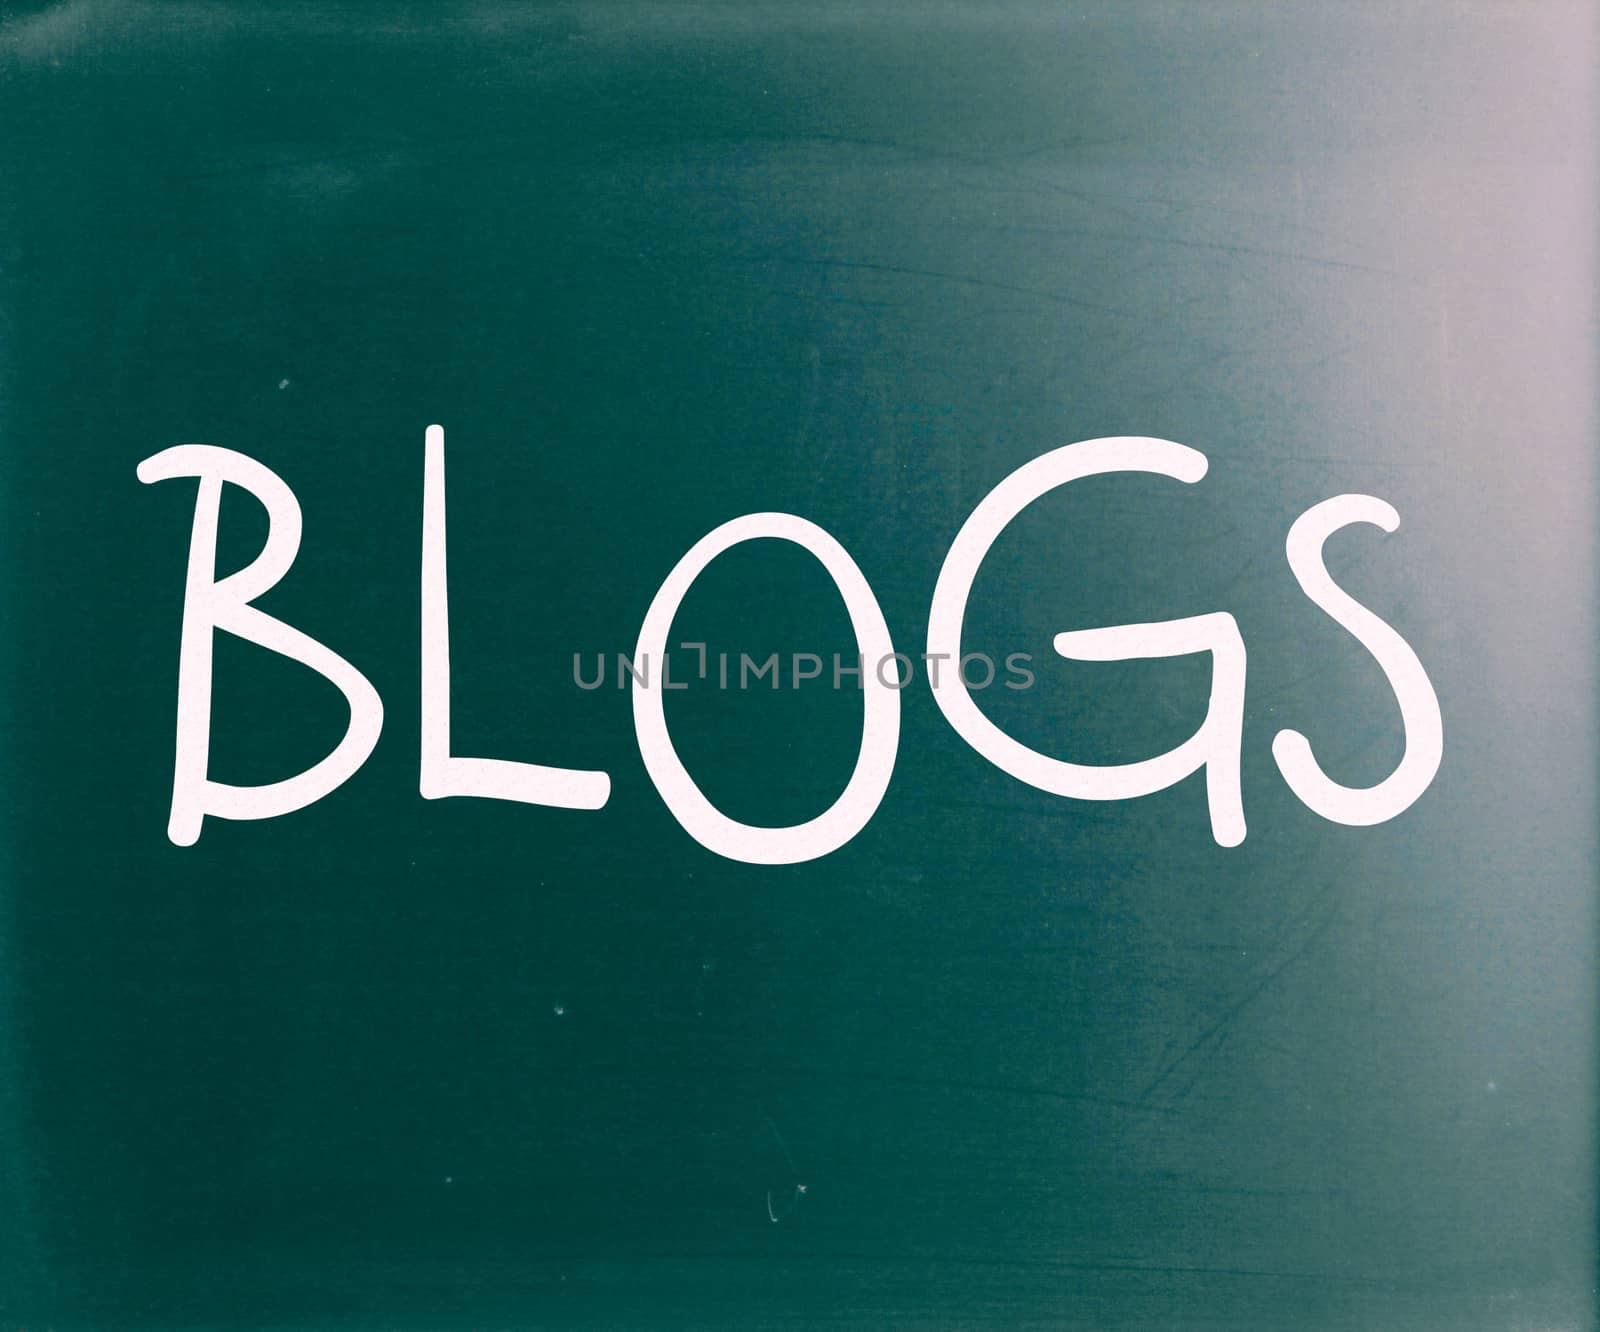 "Blogs" handwritten with white chalk on a blackboard